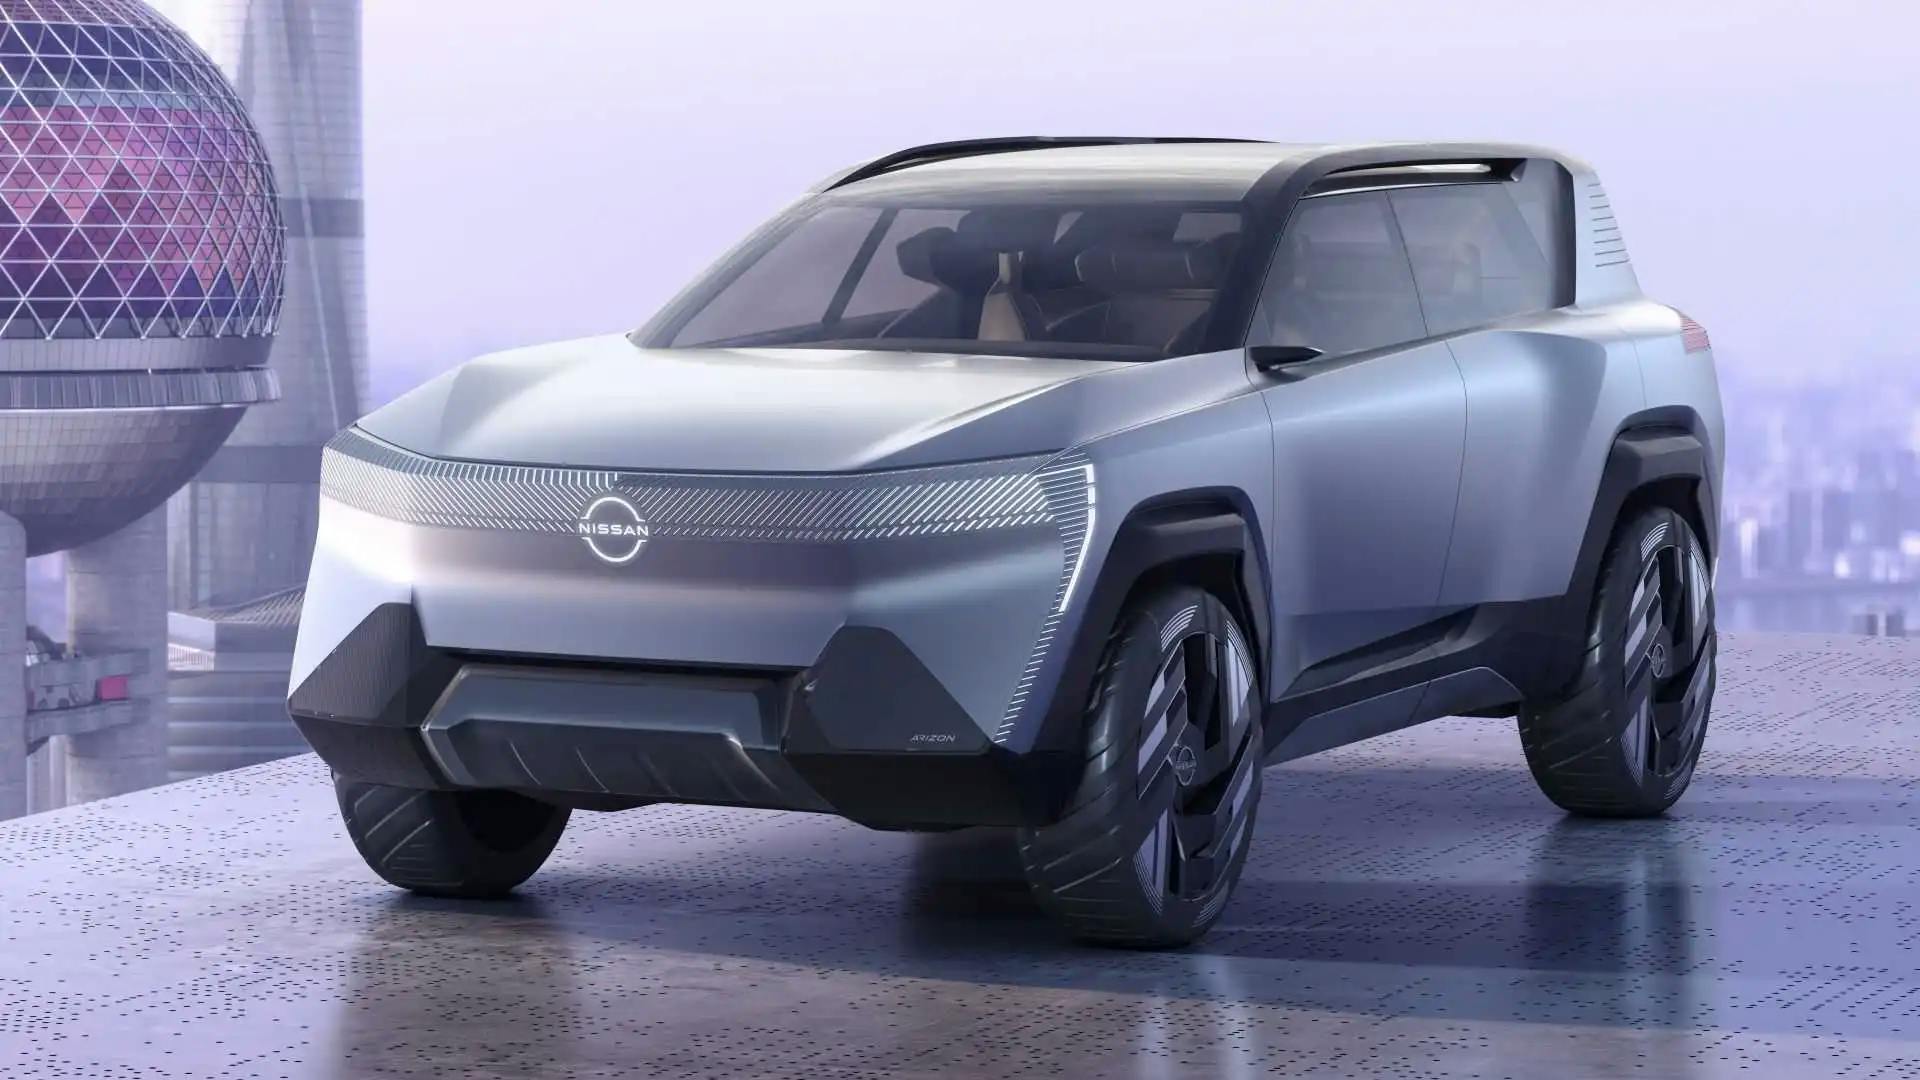 Nissan prezintă noul SUV electric Arizon cu tehnologie inovatoare